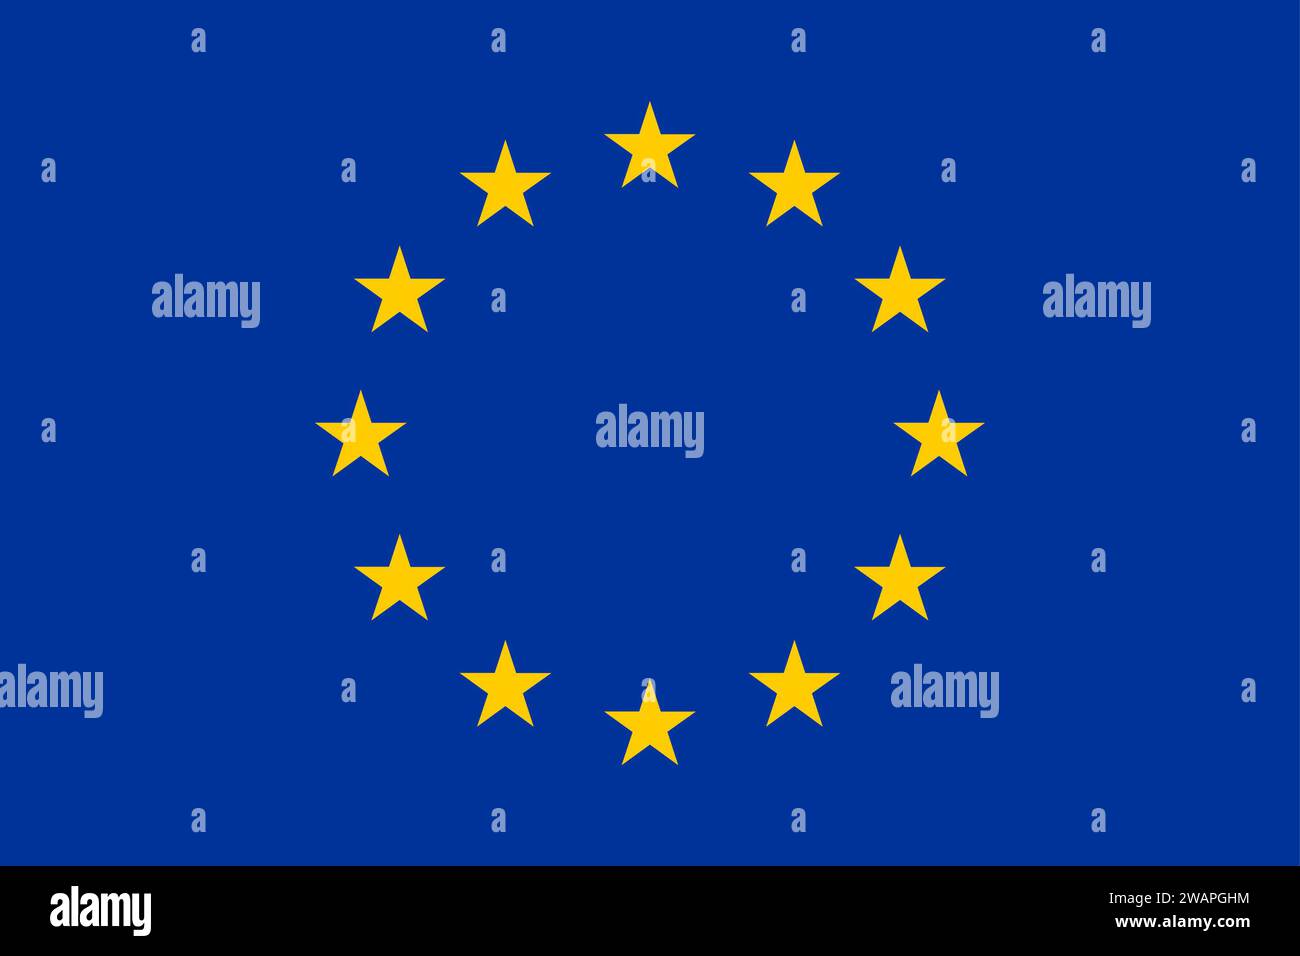 Europäischen Union Flag Stock Vektor Art und mehr Bilder von Europaflagge -  Europaflagge, Europäische Union, Kreis - iStock